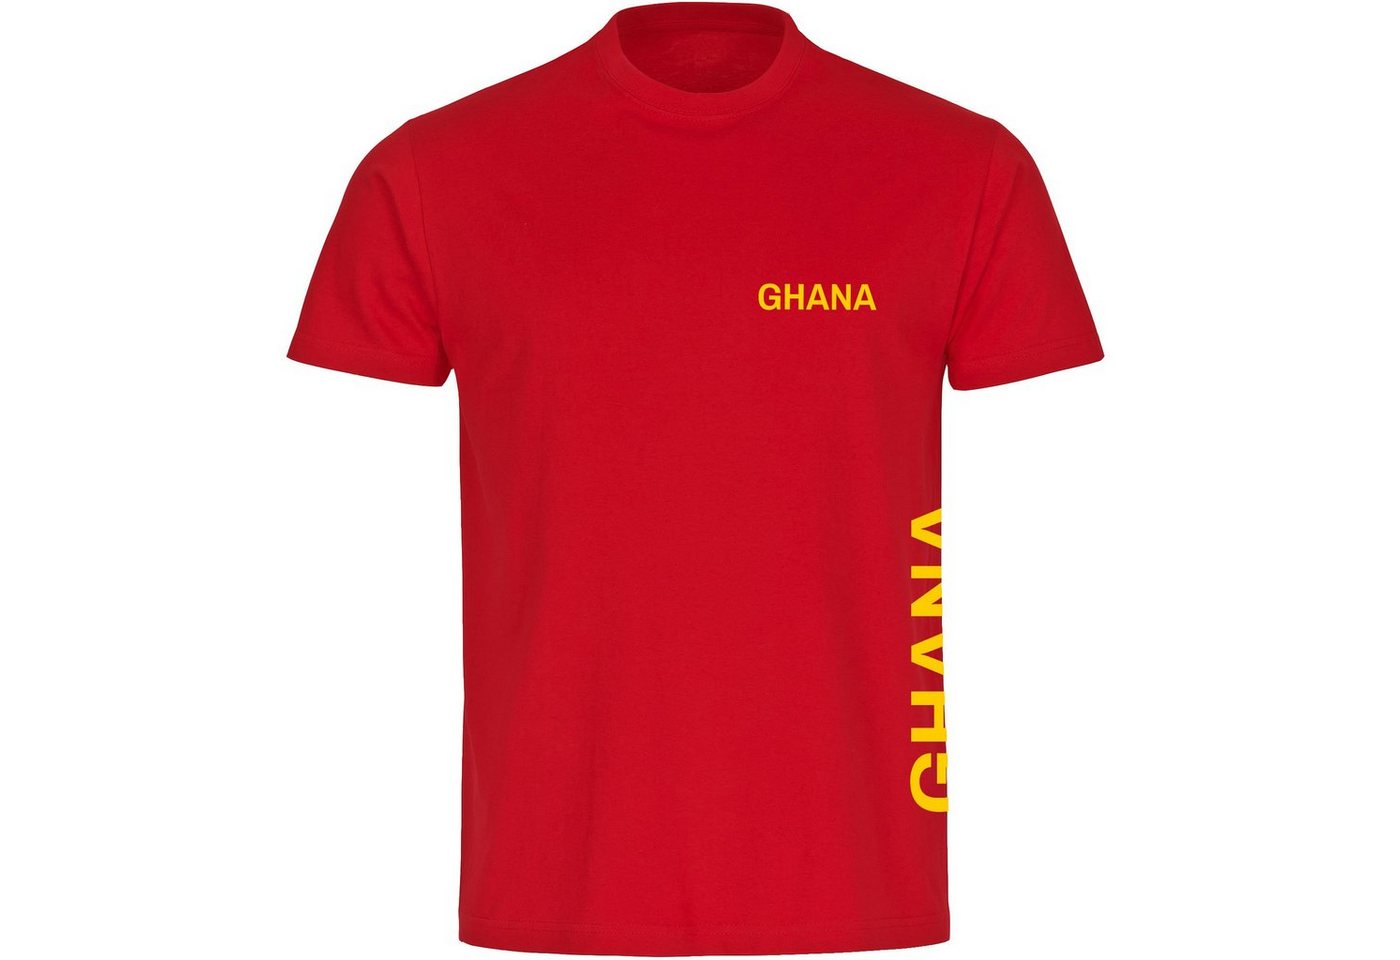 multifanshop T-Shirt Herren Ghana - Brust & Seite - Männer von multifanshop